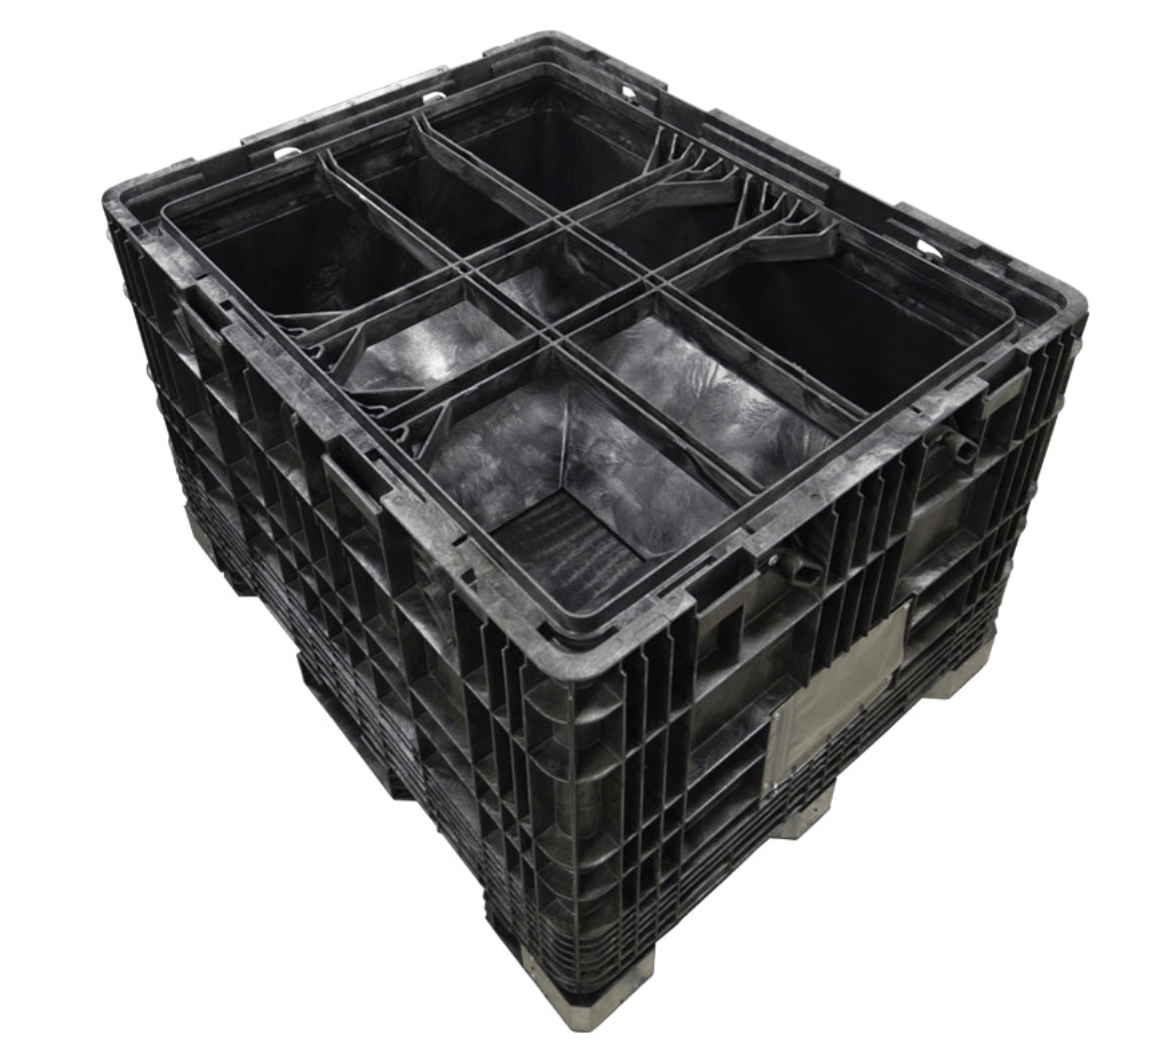 57 x 45 x 65 Probox CenterFlow Container third inside view